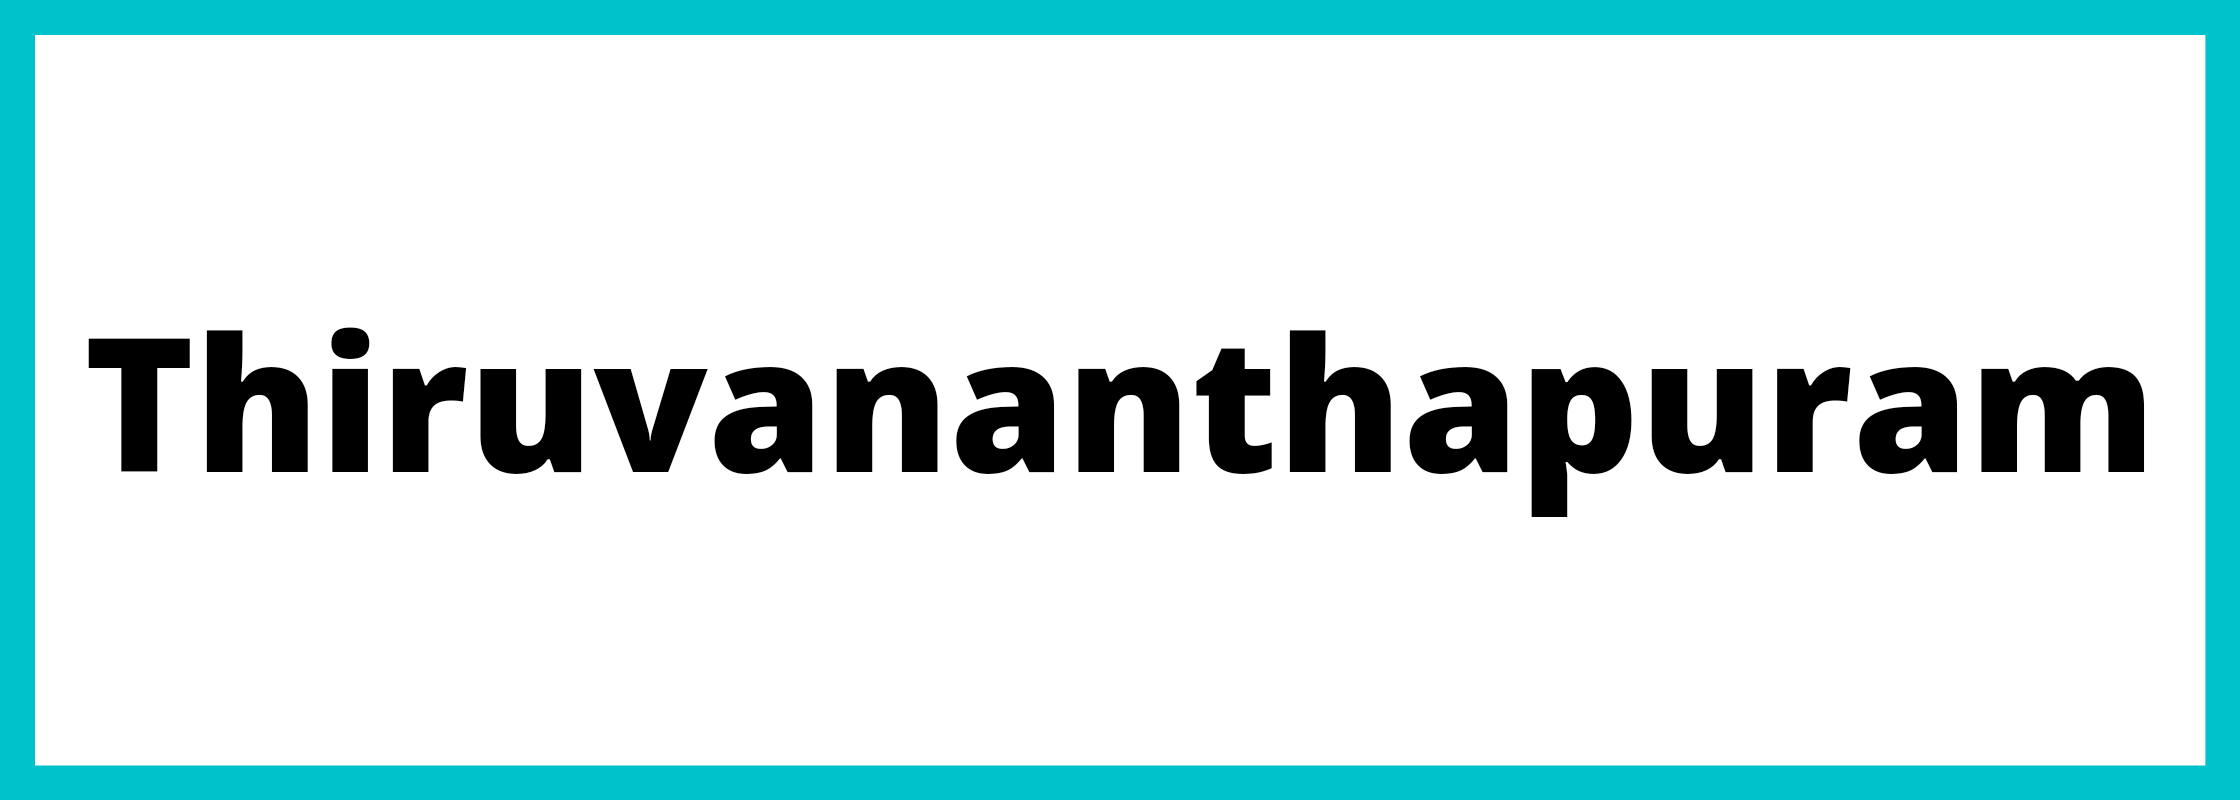 तिरुवनन्तपुरम-Thiruvananthapuram-mandi-bhav